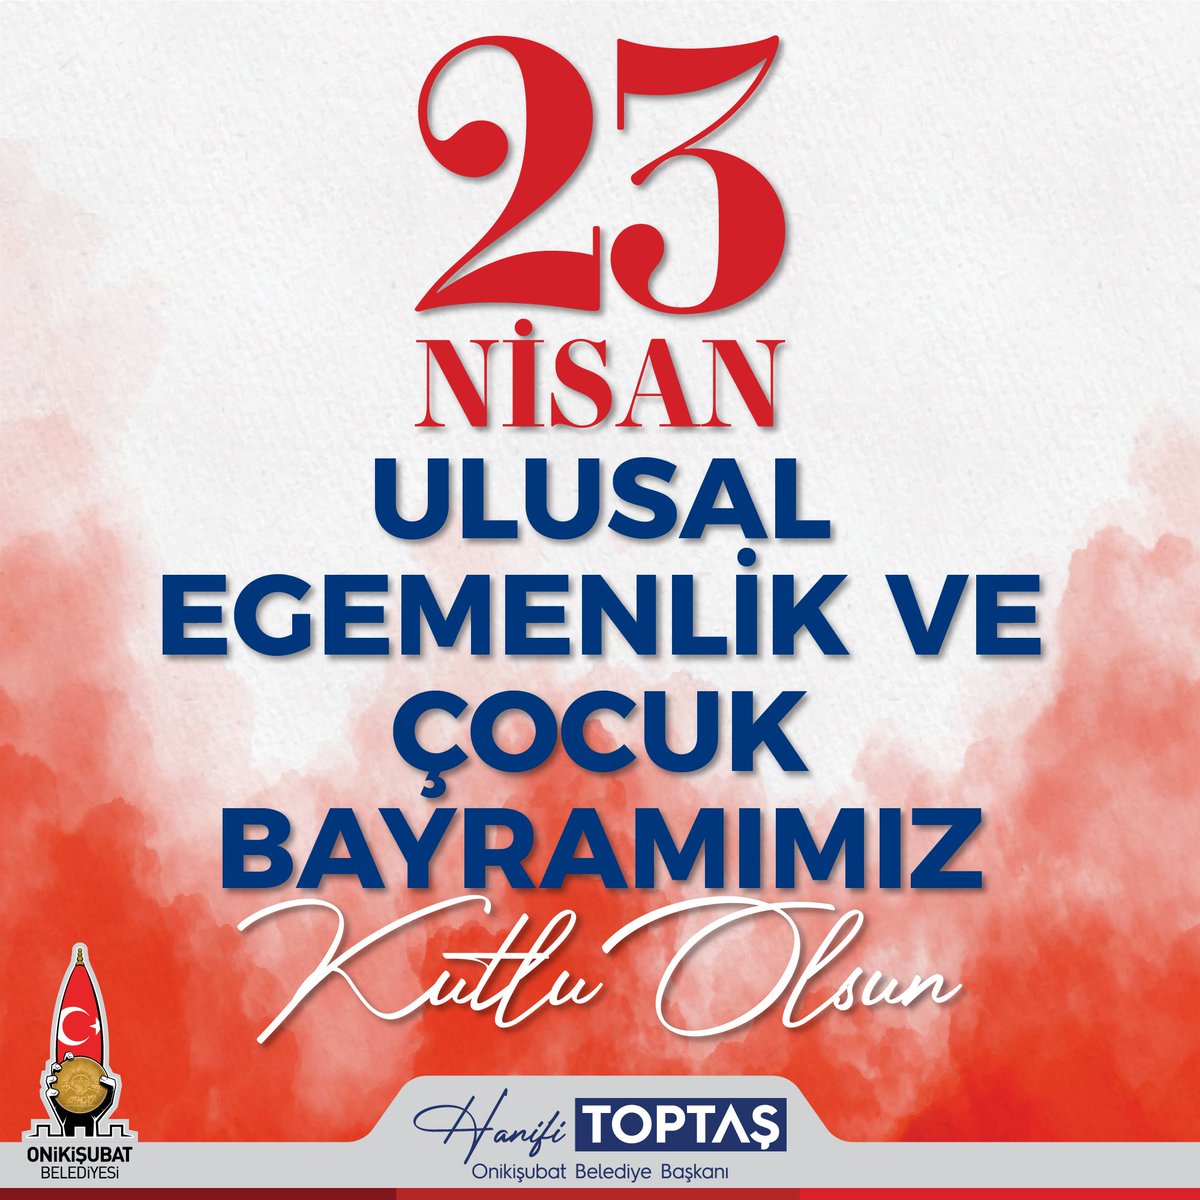 23 Nisan; gurur ve geleceğimiz... Gazi Meclisimizin açılışının 104. yıl dönümünü kutladığımız bu anlamlı günde Cumhuriyetimizin kurucusu Gazi Mustafa Kemal Atatürk ve şehitlerimizi rahmet, minnet ve saygıyla anıyoruz. Geleceğimizin teminatı olan çocuklarımızın #23Nisan Ulusal…